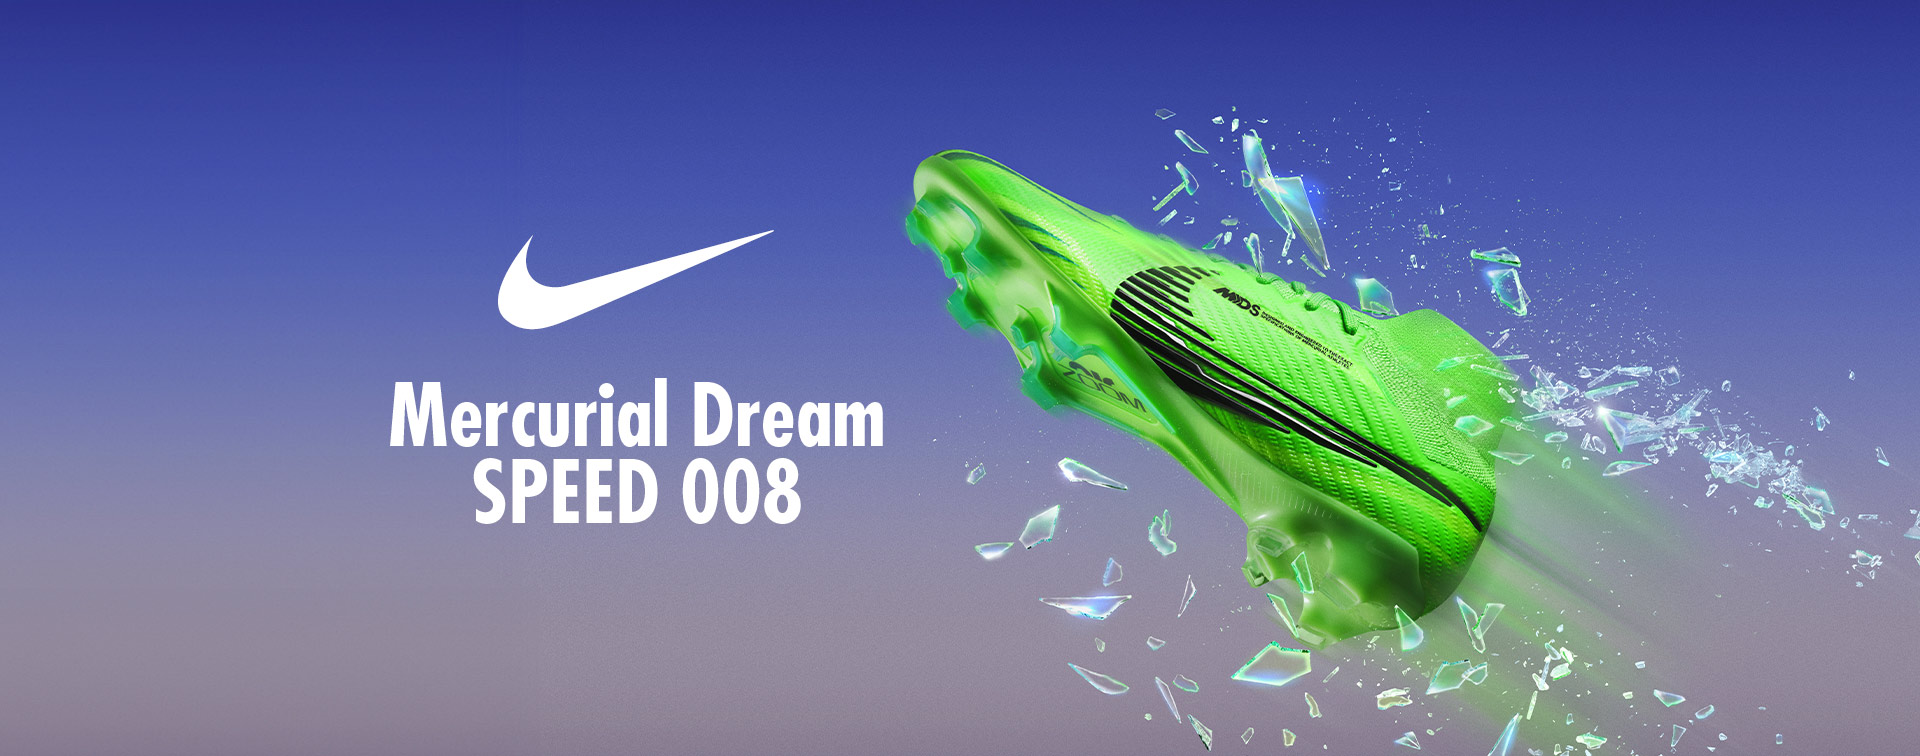 Mercurial Dream Speed 008